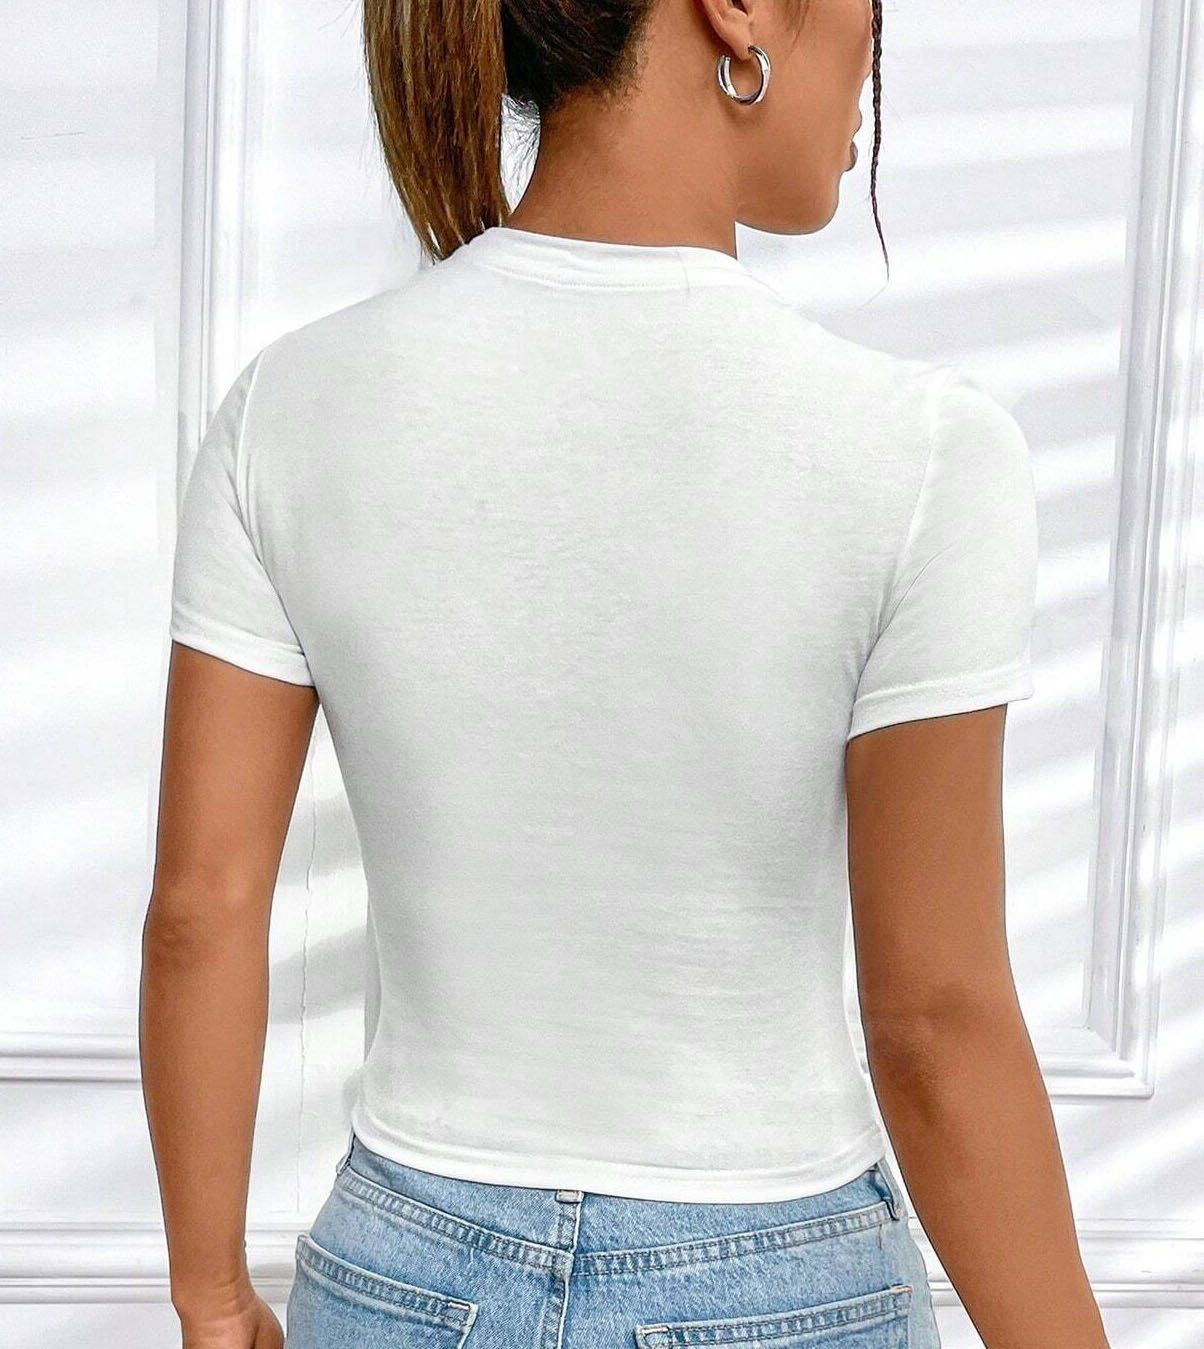 RMK T-Shirt Damen Shirt aus Ausschnitt Weiß in Baumwolle, Top Rundhals halbgekämmter Unifarbe elegant kurzarm